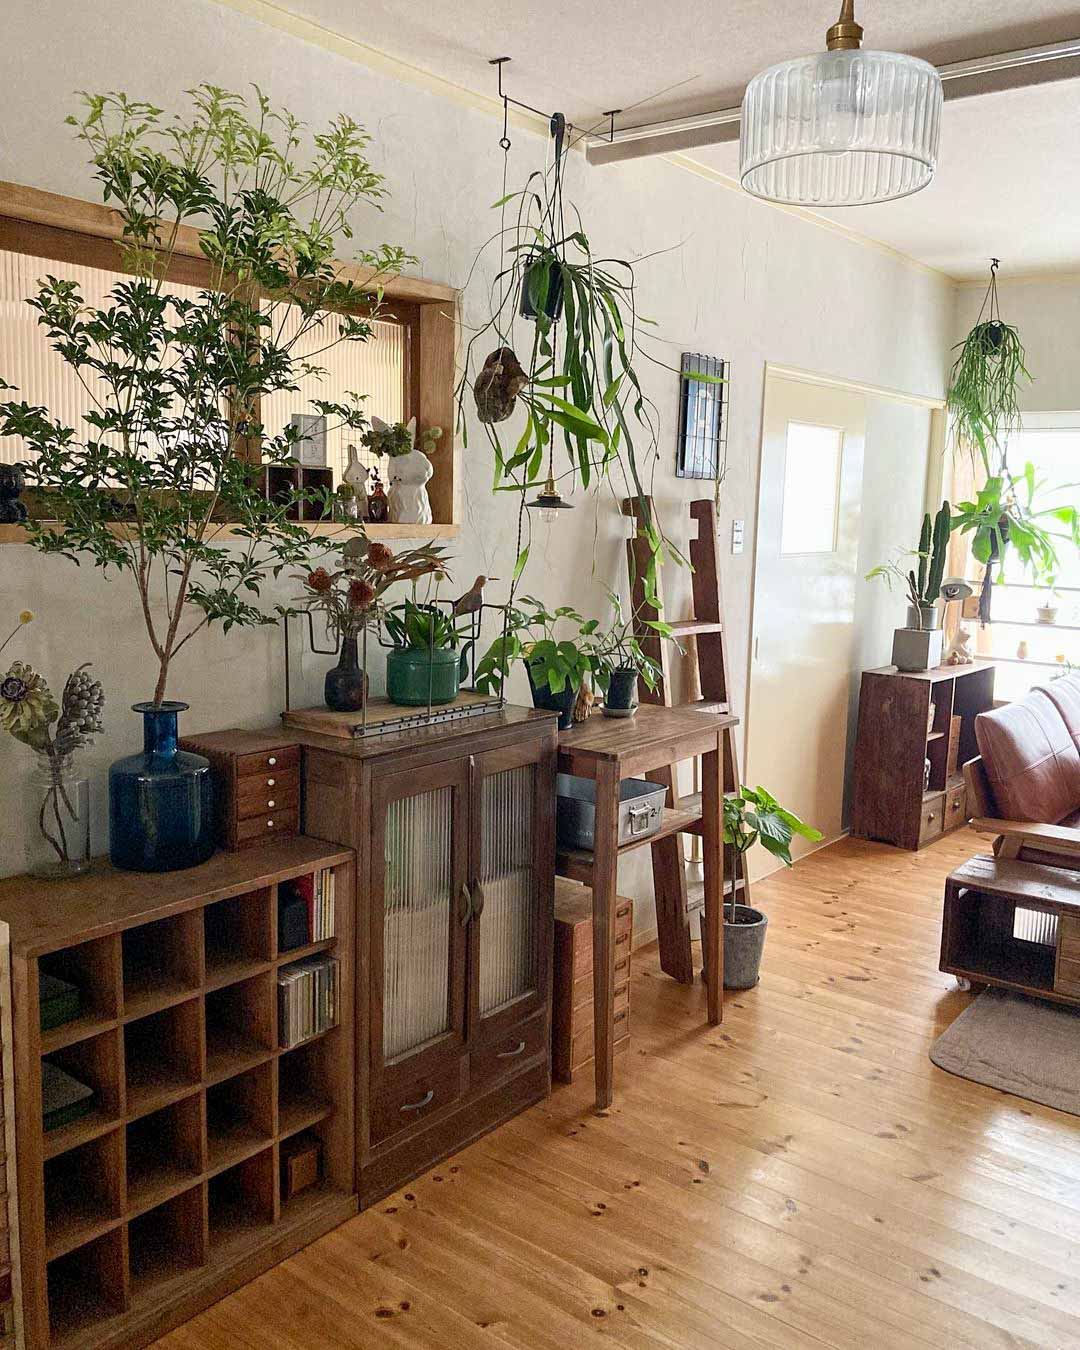 形も来歴もそれぞれ違う木の家具がうまく調和して並んでいて、憧れてしまうお部屋です。